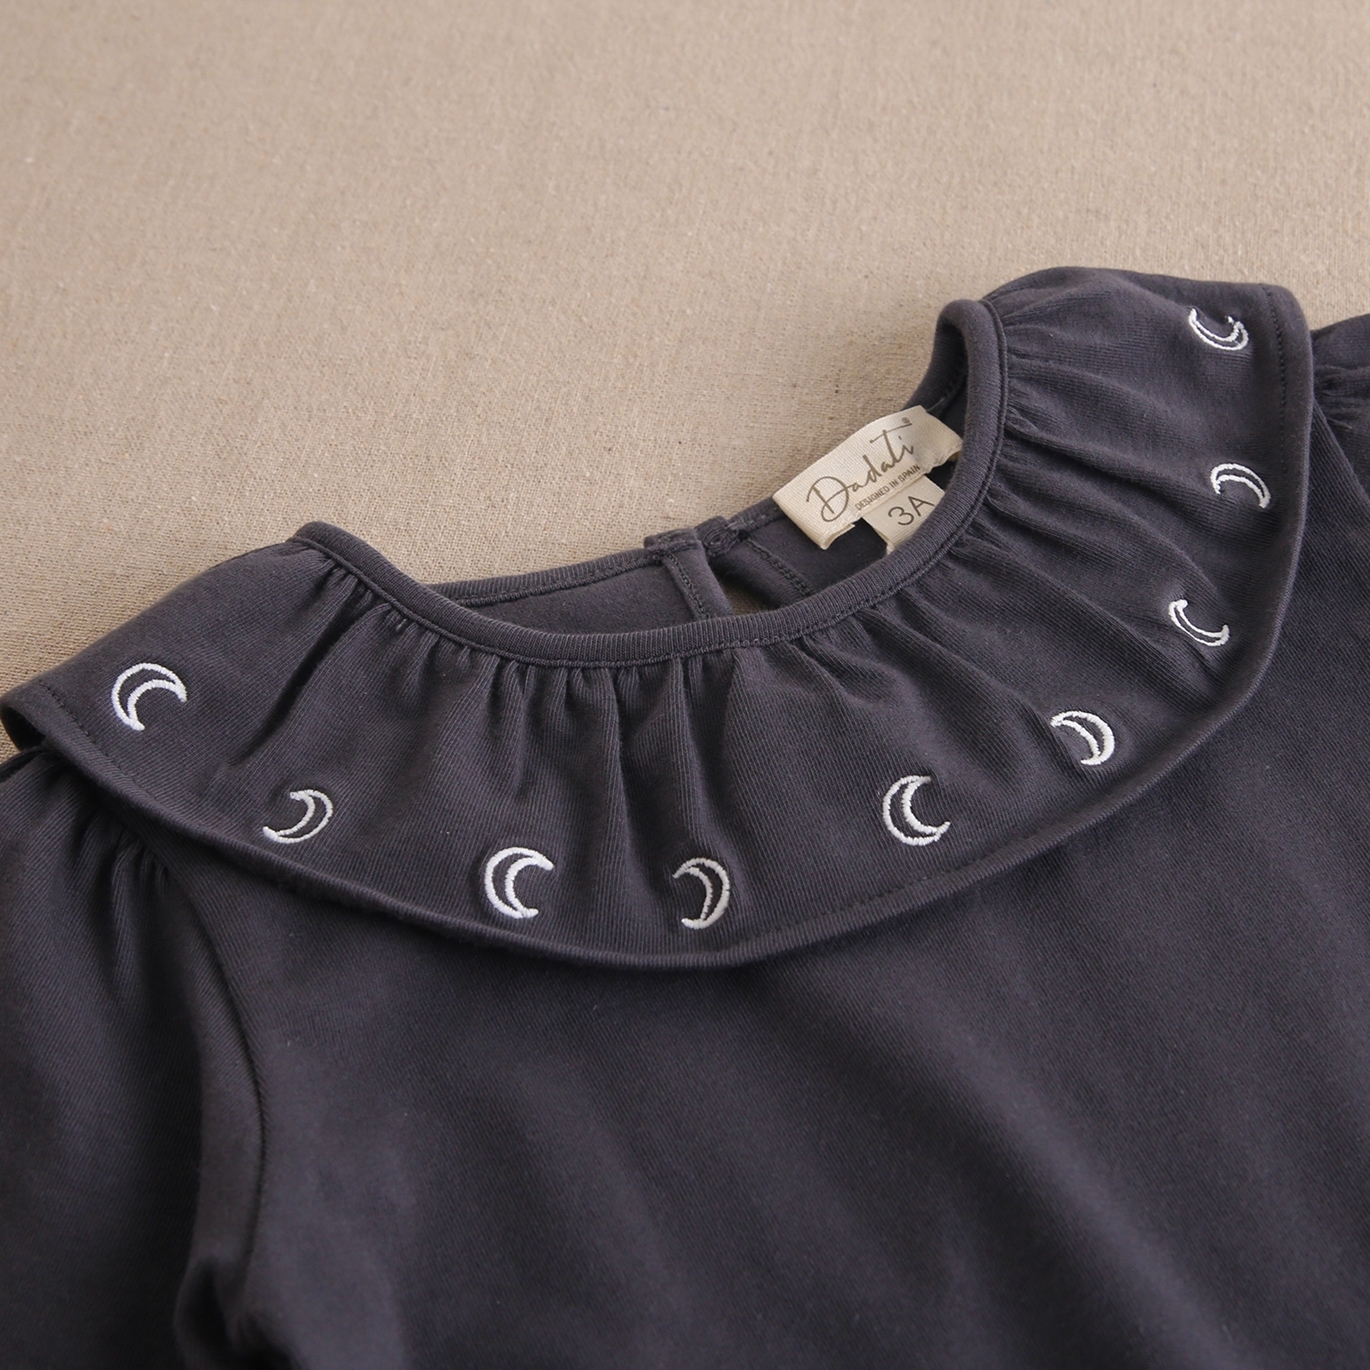 Imagen de Camiseta de niña gris oscuro con cuello volante y bordado lunas